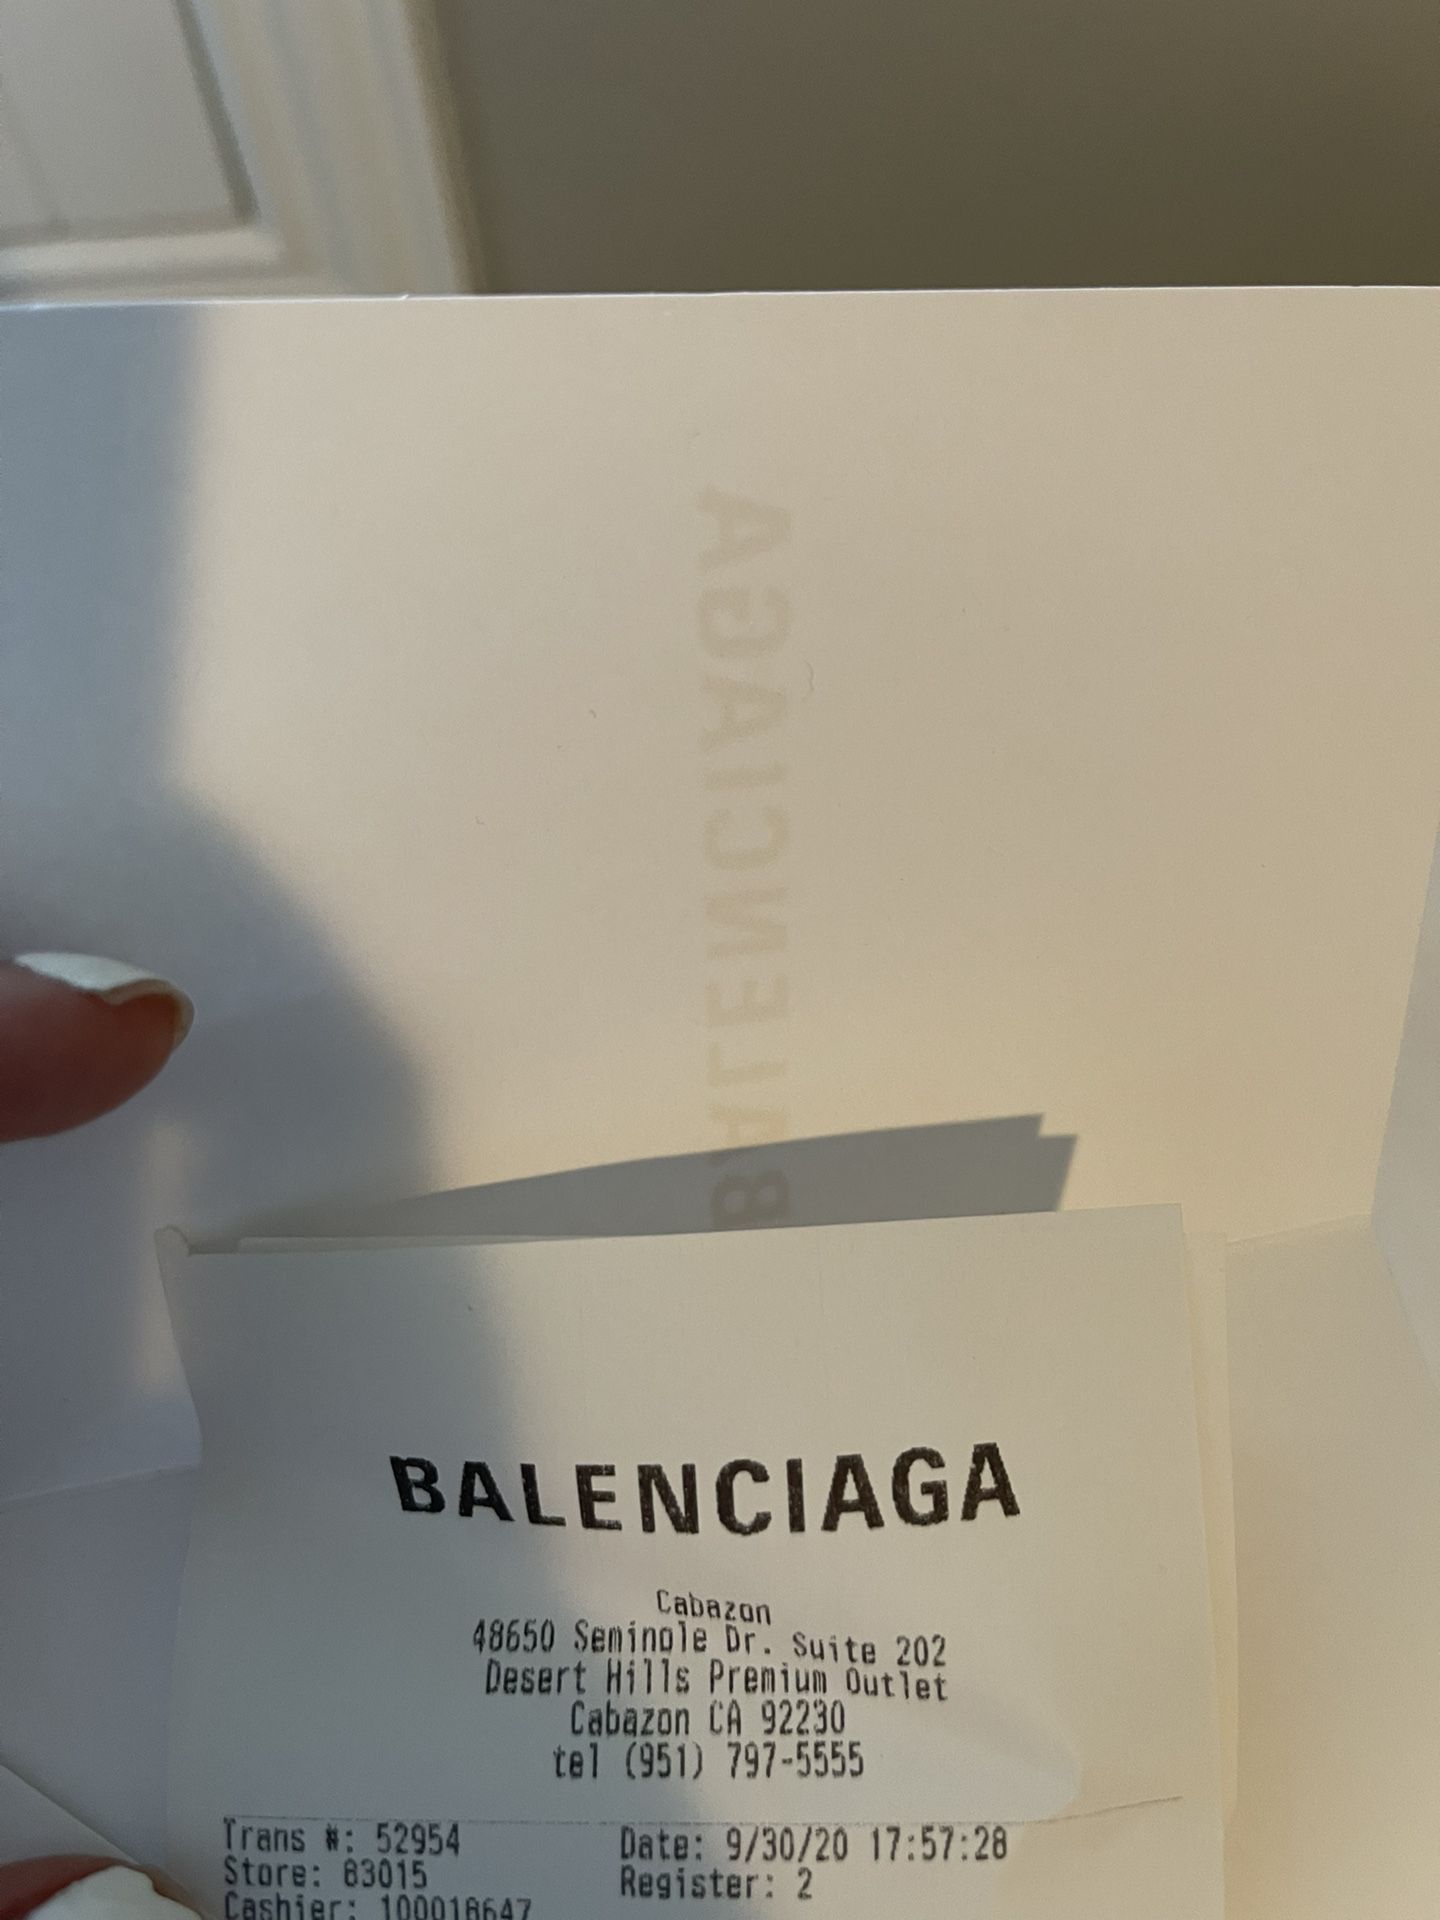 Balenciaga Shopping at Cabazon Premium Outlet 